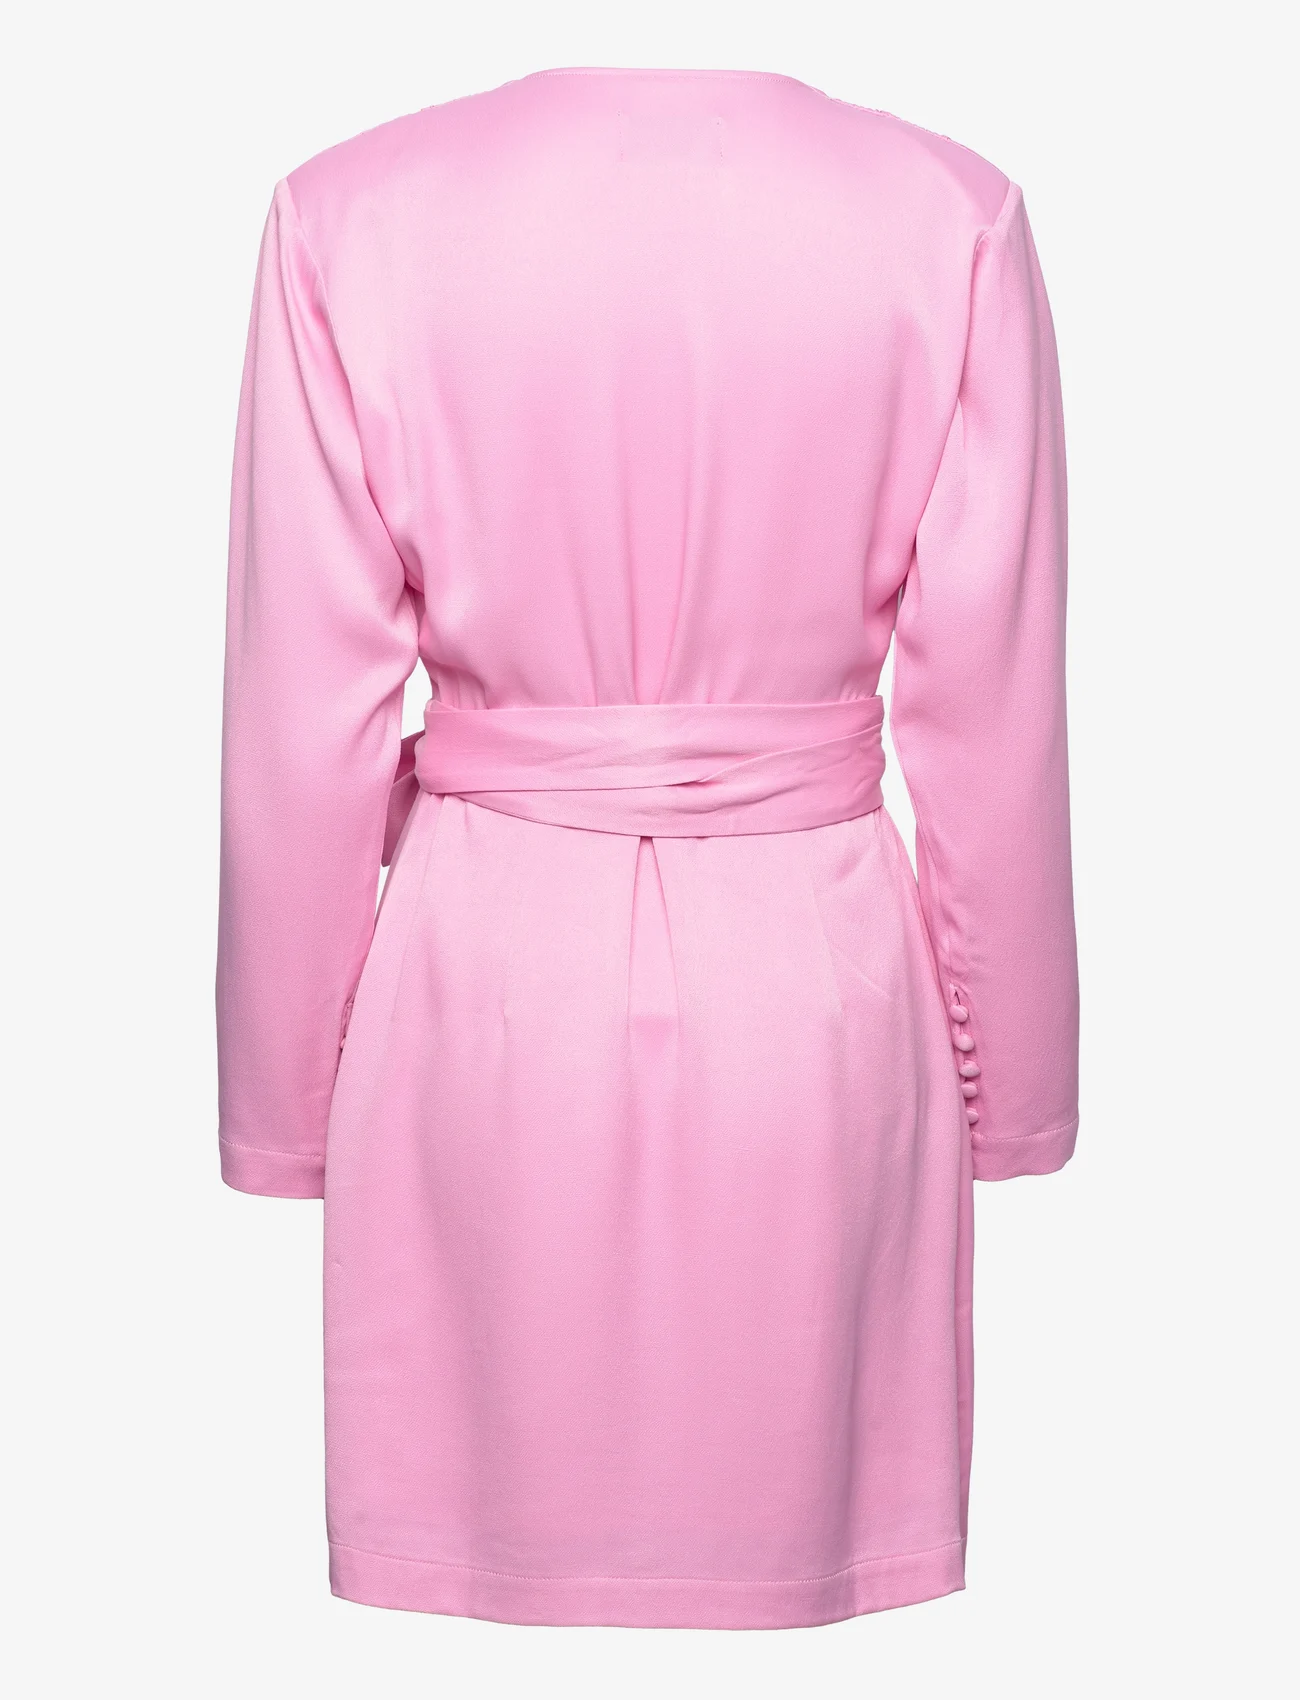 MAUD - Sanna Dress - festkläder till outletpriser - pink - 1